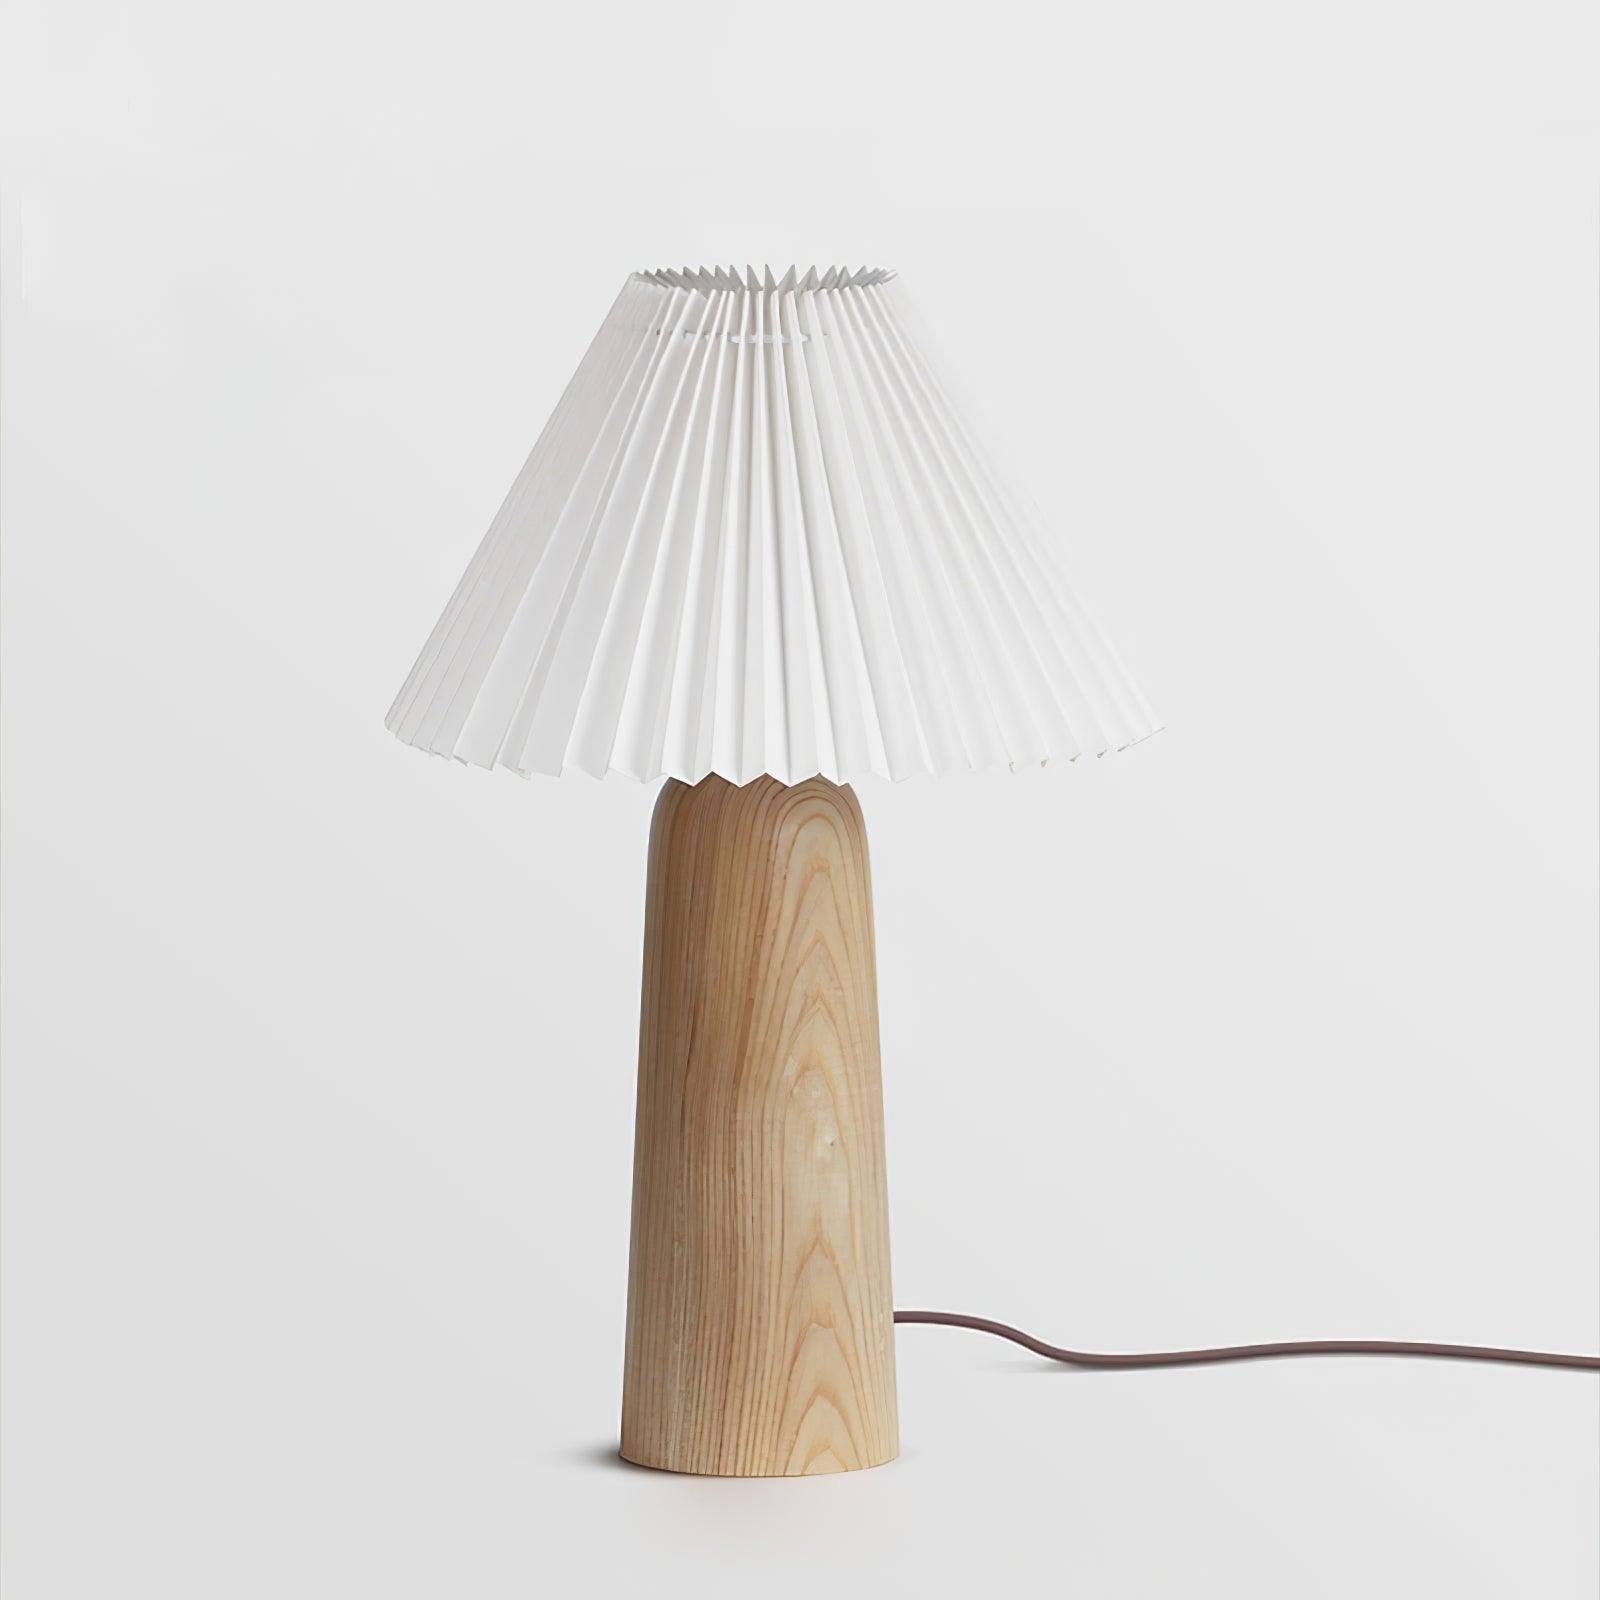 Facet Table Lamp Model E ∅ 11″ x H 15.7″ , Dia 28cm x H 40cm , White